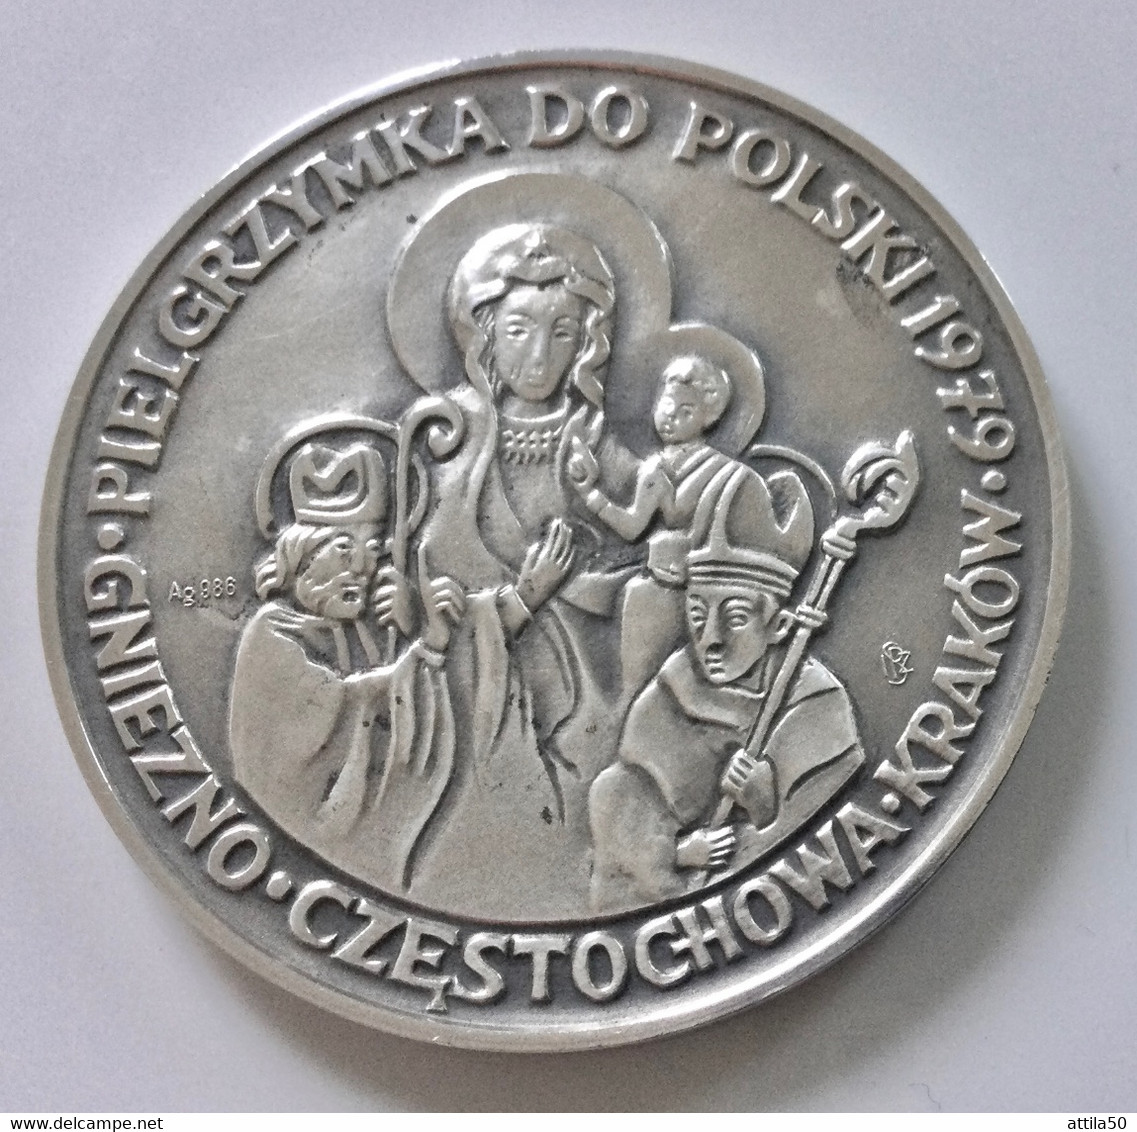 Papa Giovanni Paolo II - R. Madonna Di Cestocova - Medaglia In Argento Gr.26,5 Diametro Mm.40 - Monarchia / Nobiltà